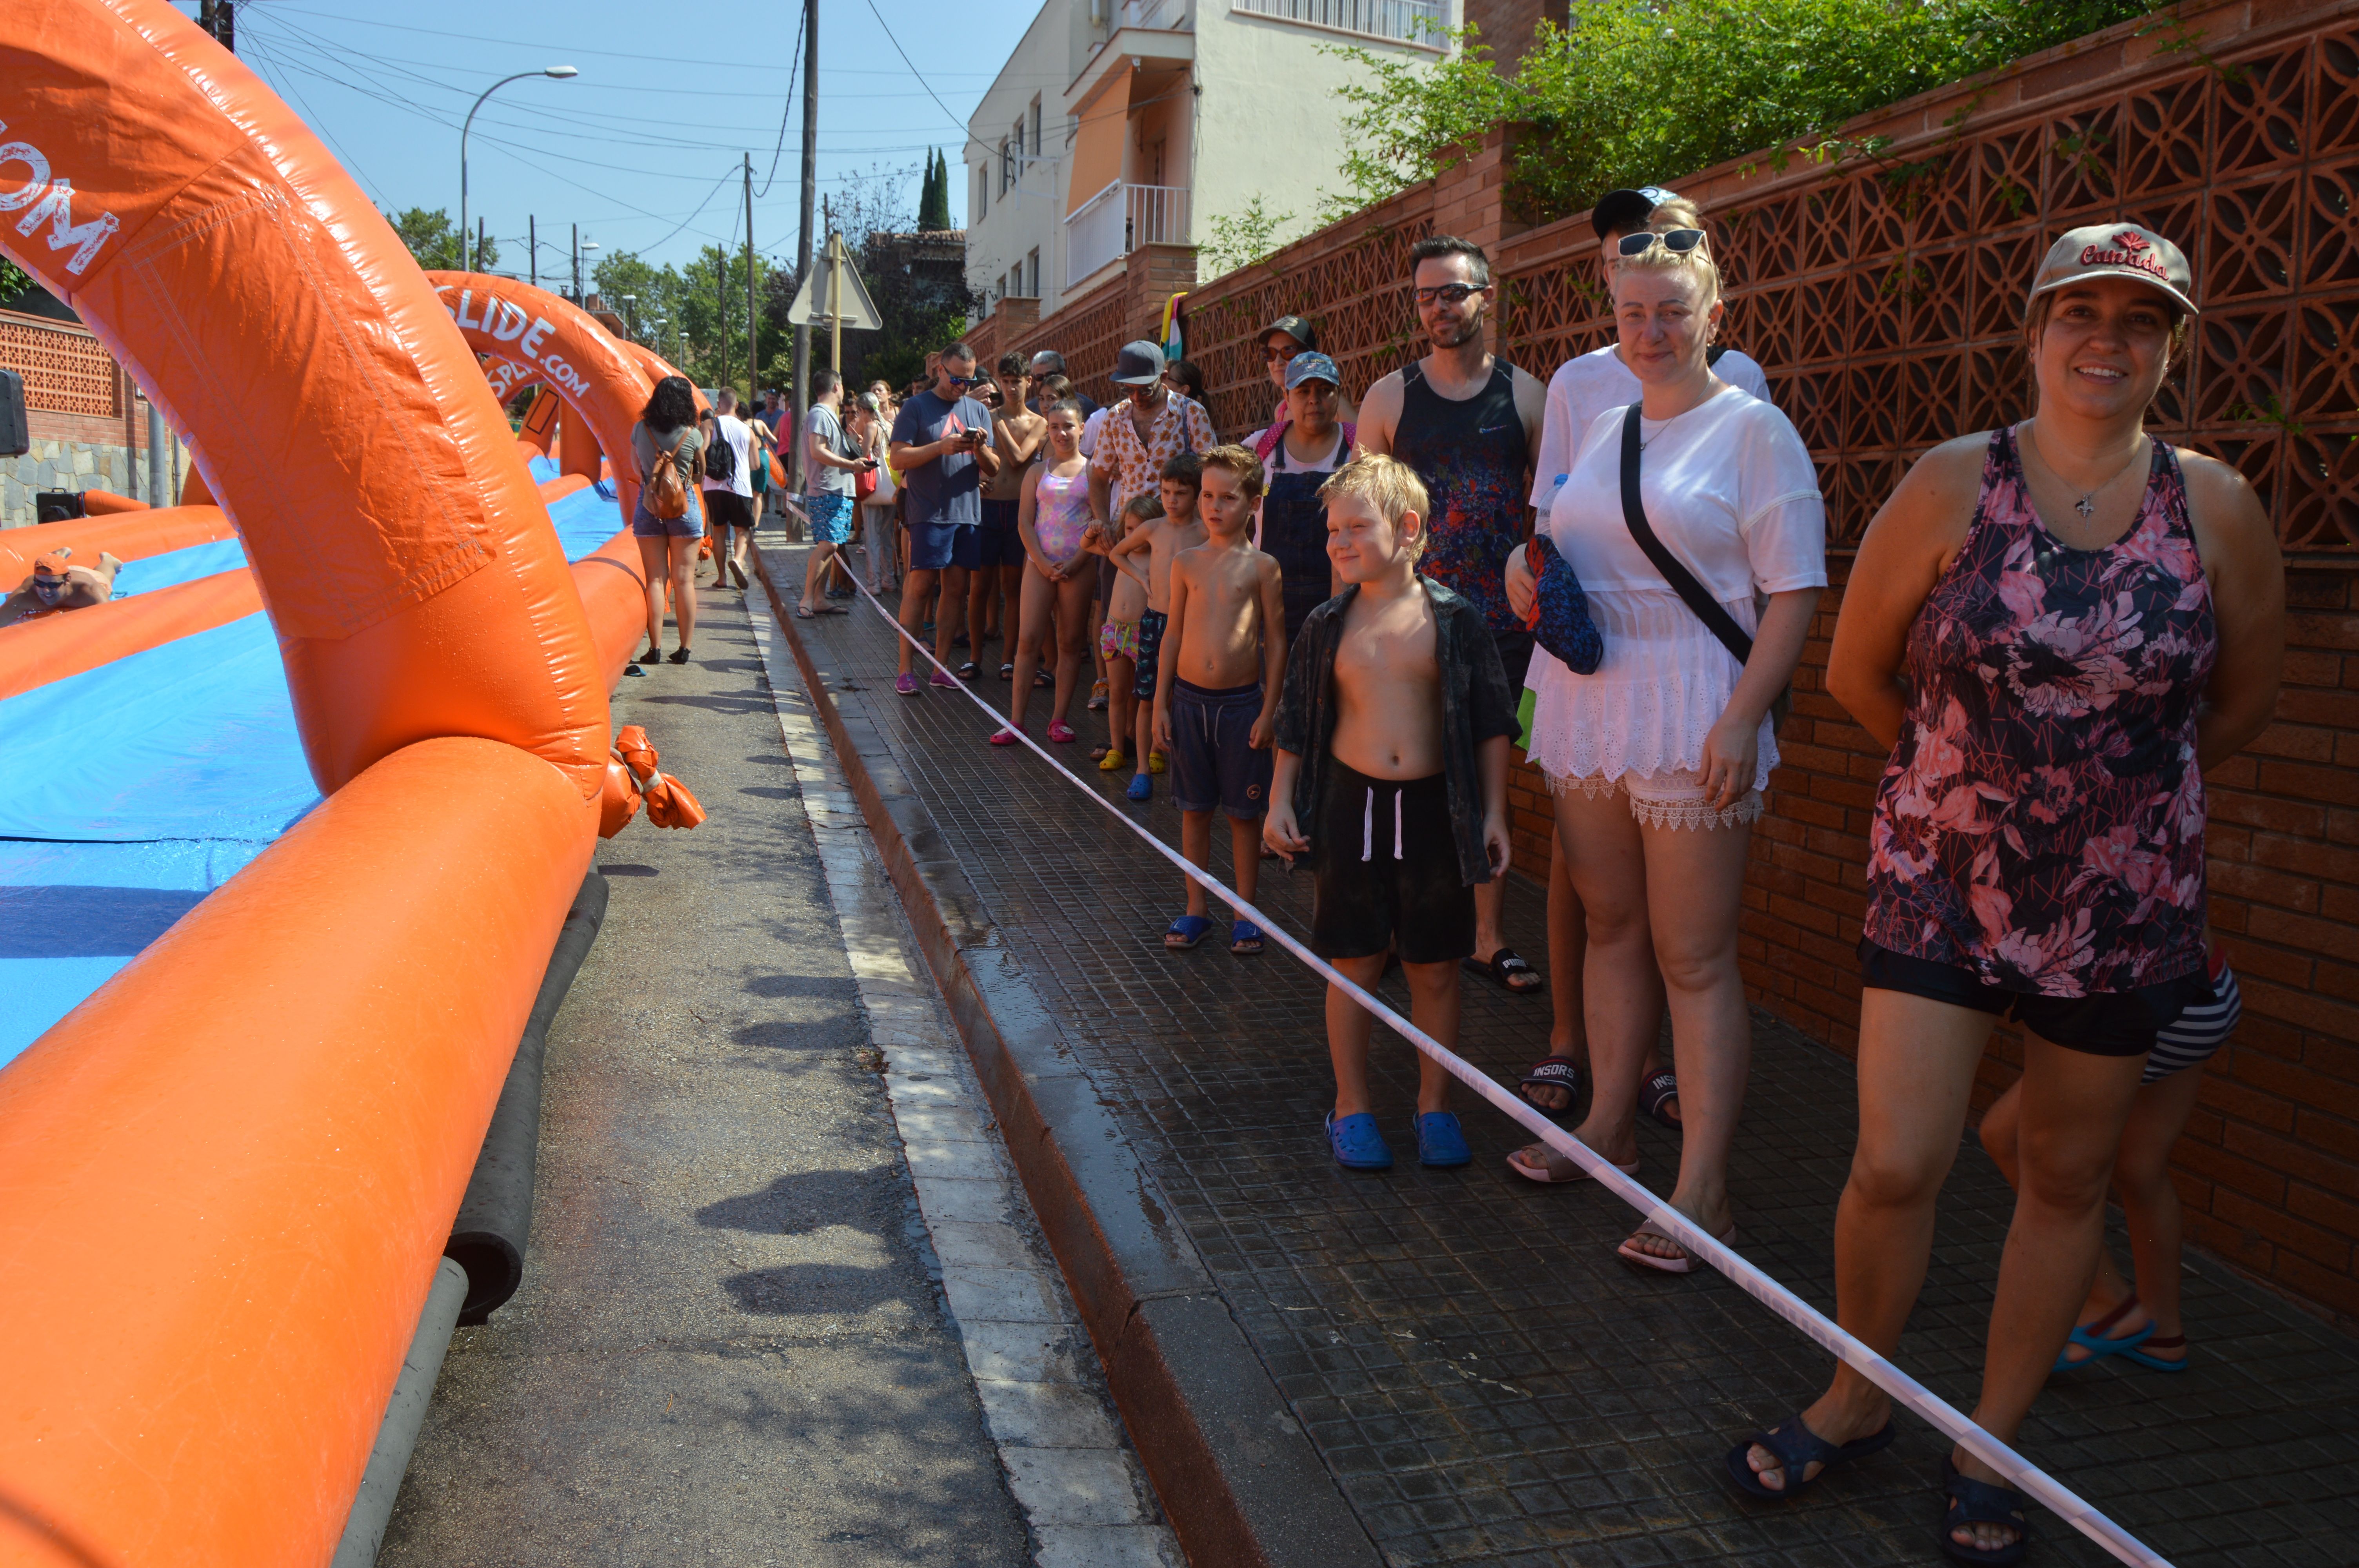 Festa infantil de l’aigua amb tobogan gegant aquàtic al barri de Montflorit. FOTO: Nora Muñoz Otero